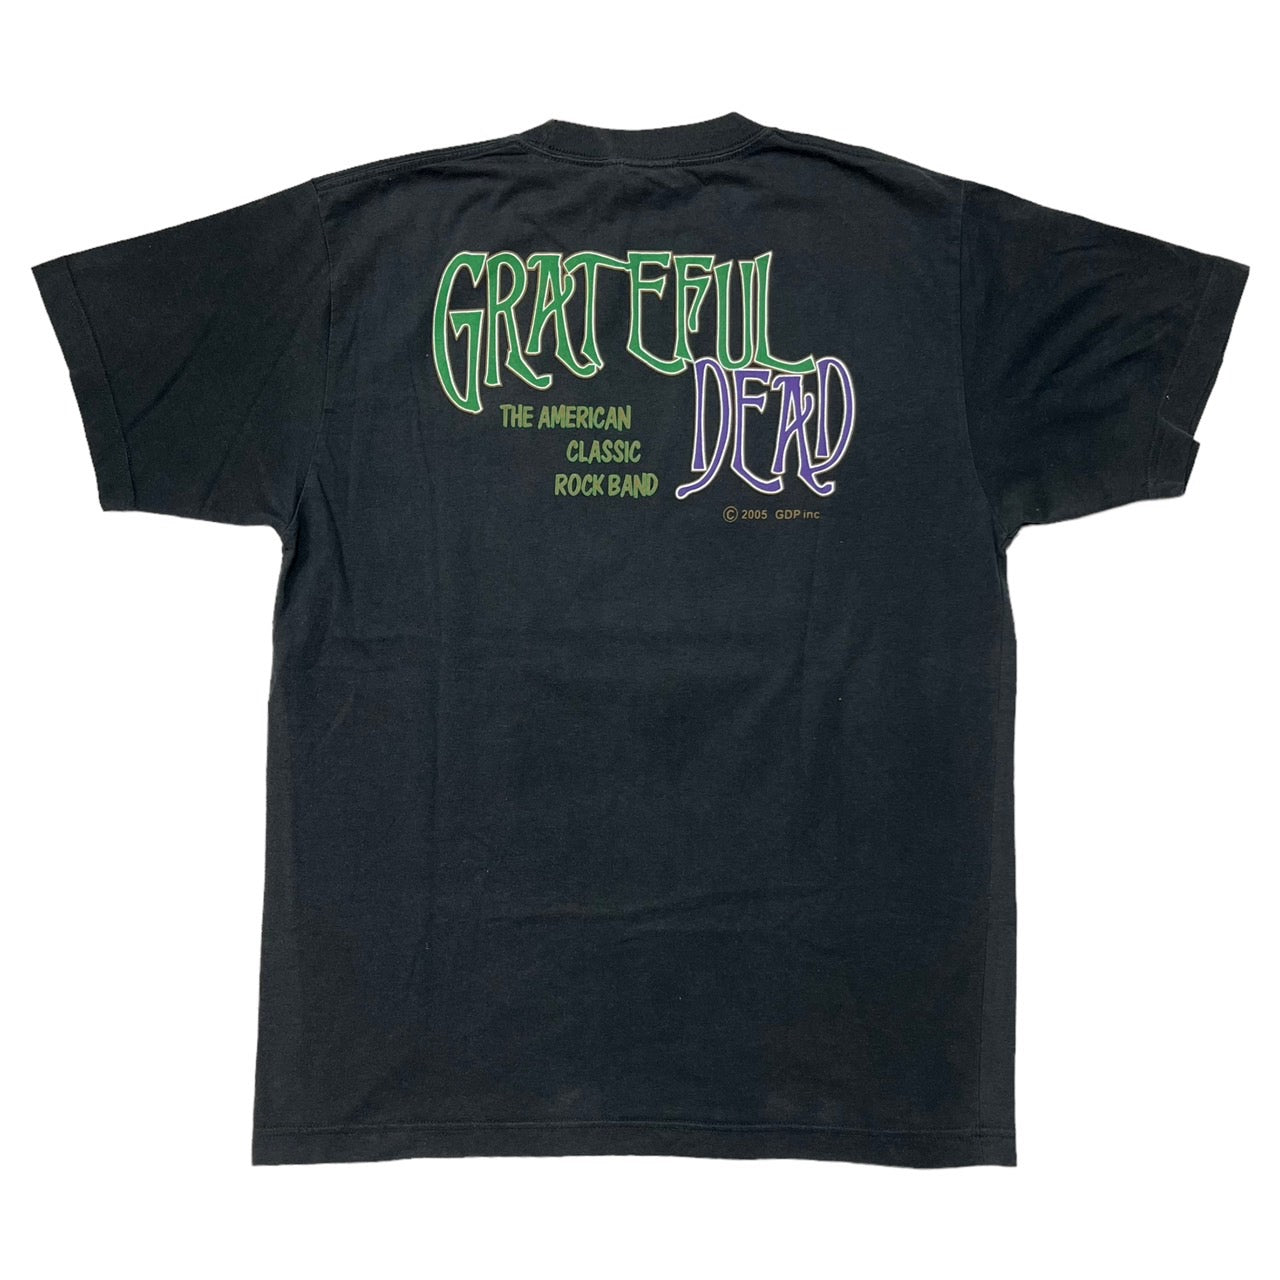 Grateful Dead(グレイトフルデッド) 00's skull band tee/バンドT 